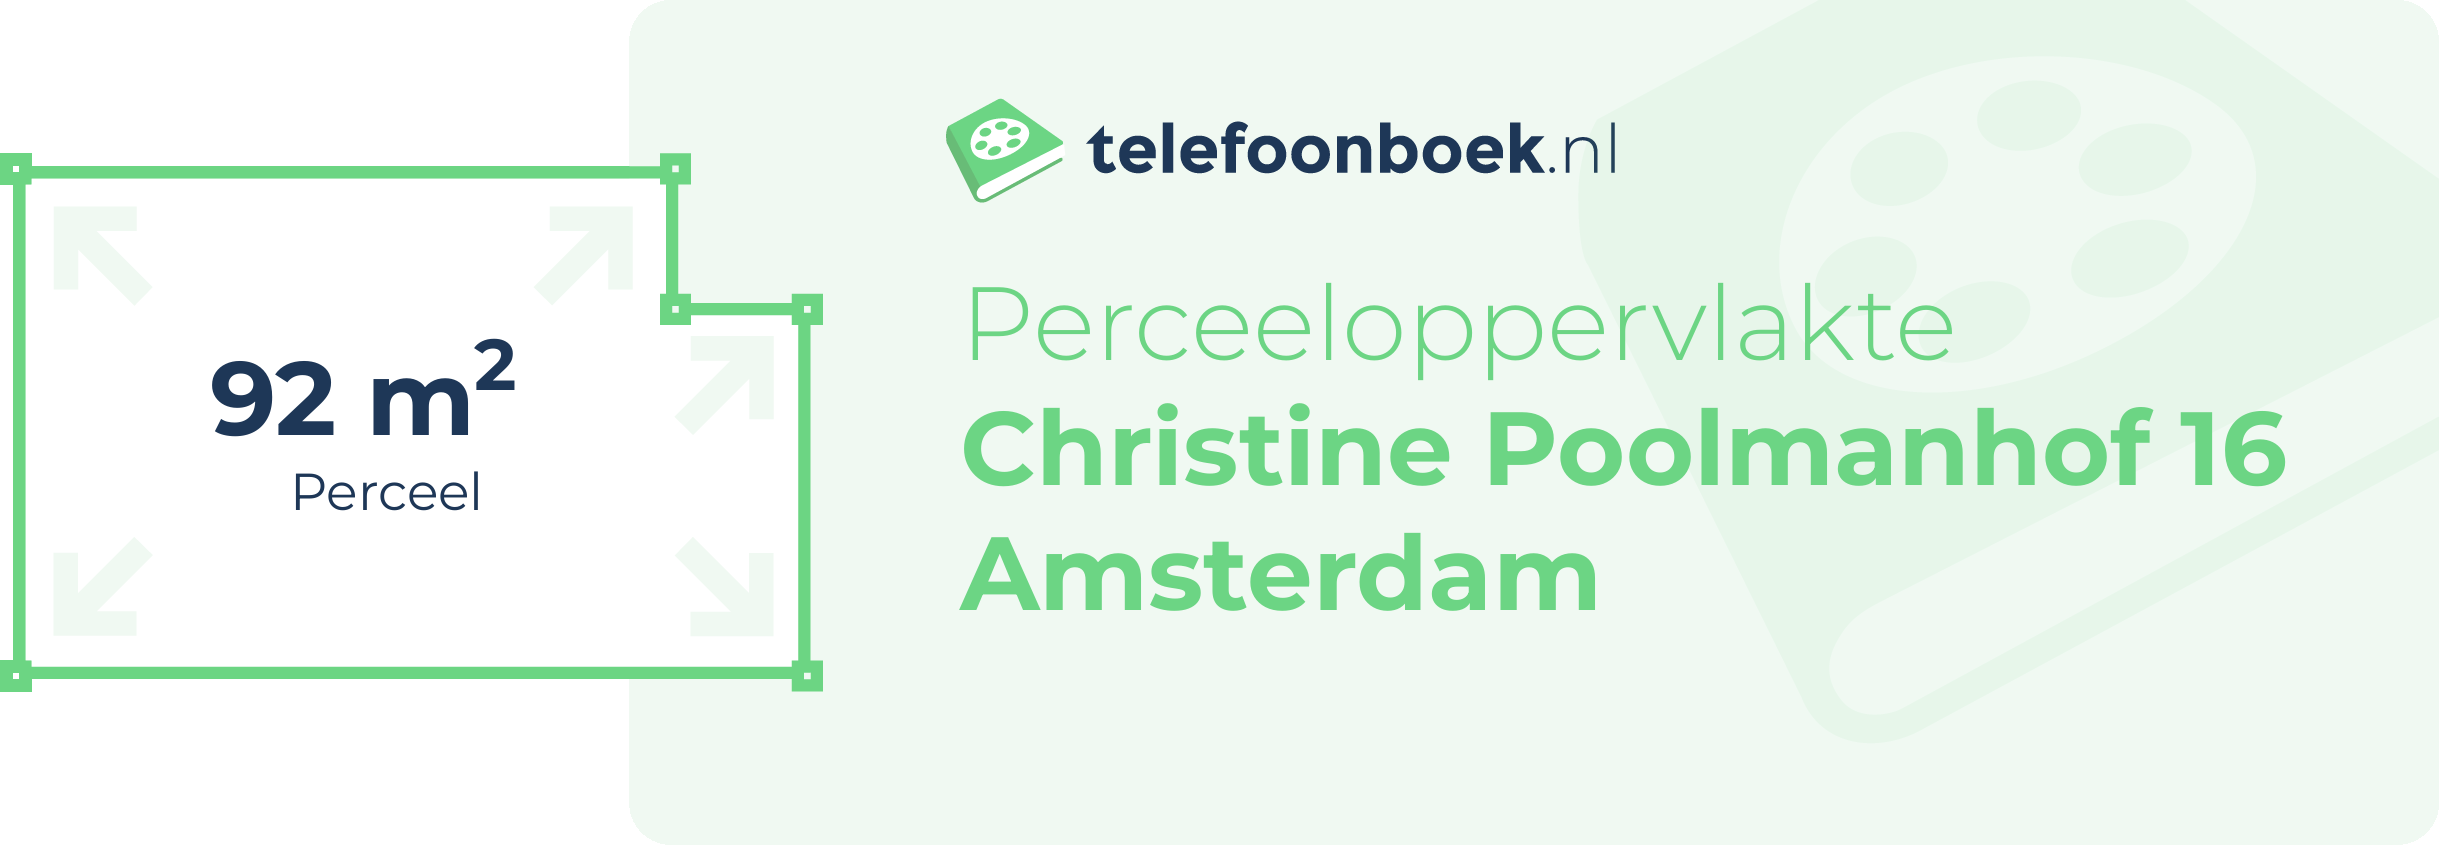 Perceeloppervlakte Christine Poolmanhof 16 Amsterdam